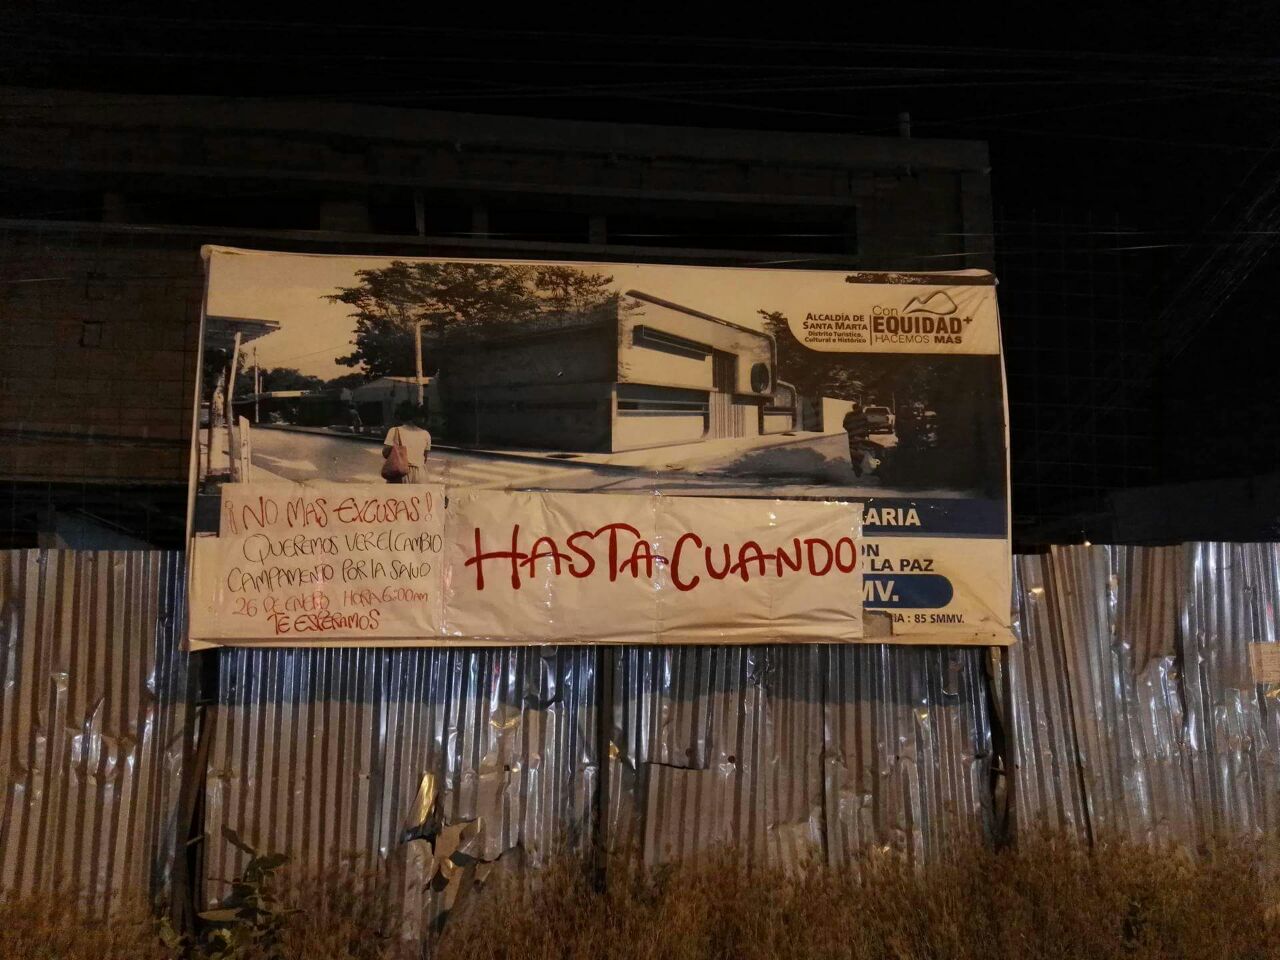 ¿Hasta cuándo? dice un cartel colgado en la valla informativa del centro de salud en La Paz.